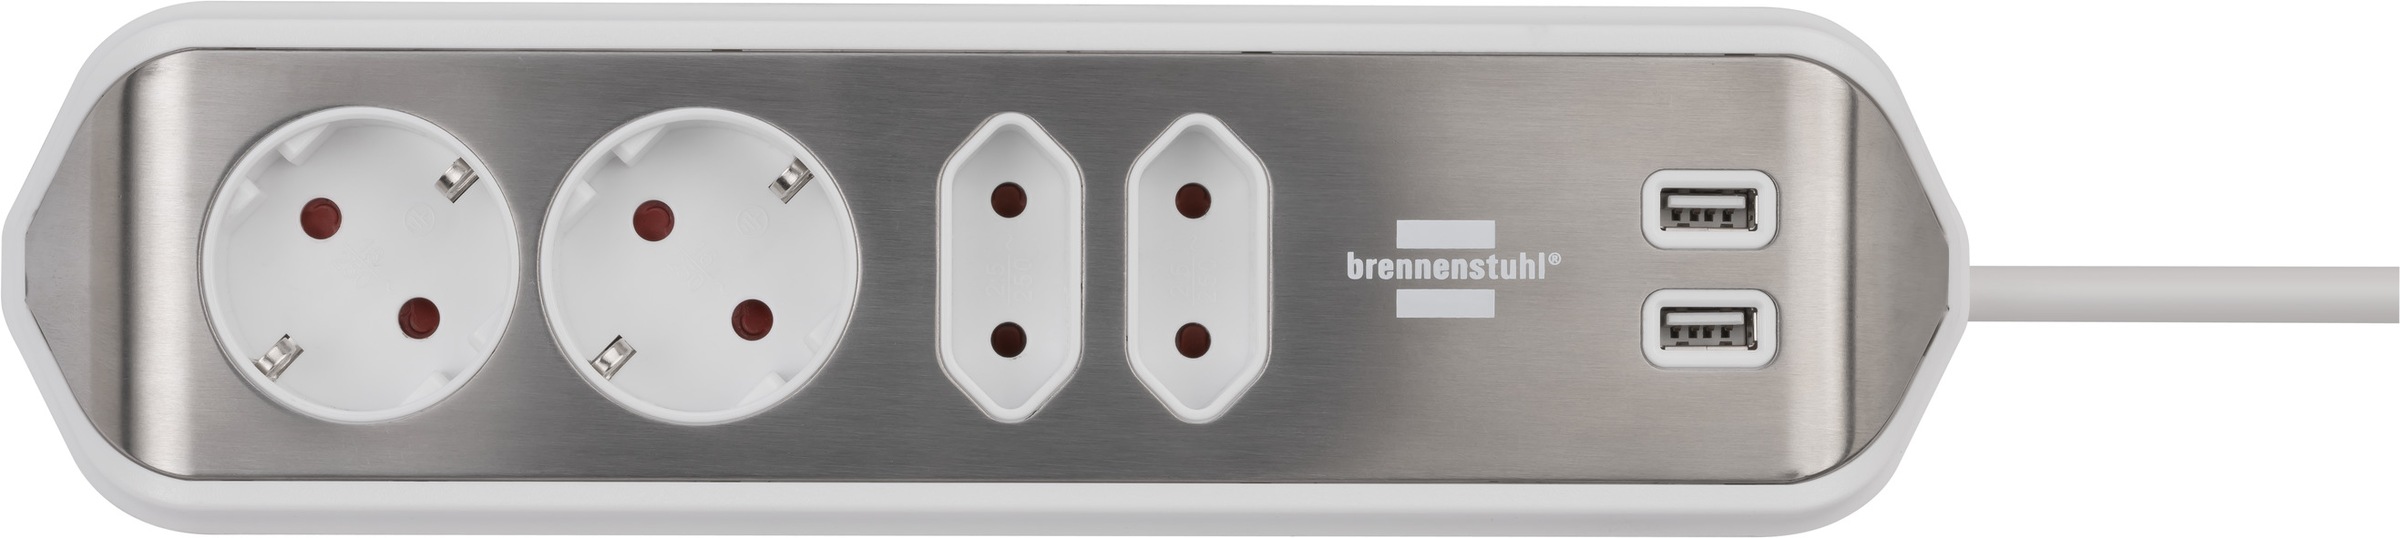 Brennenstuhl Steckdosenleiste "estilo", 4-fach, 2x Schutzkontakt-Steckdosen, 2x Euro-Steckdosen, USB-Ladefunktion